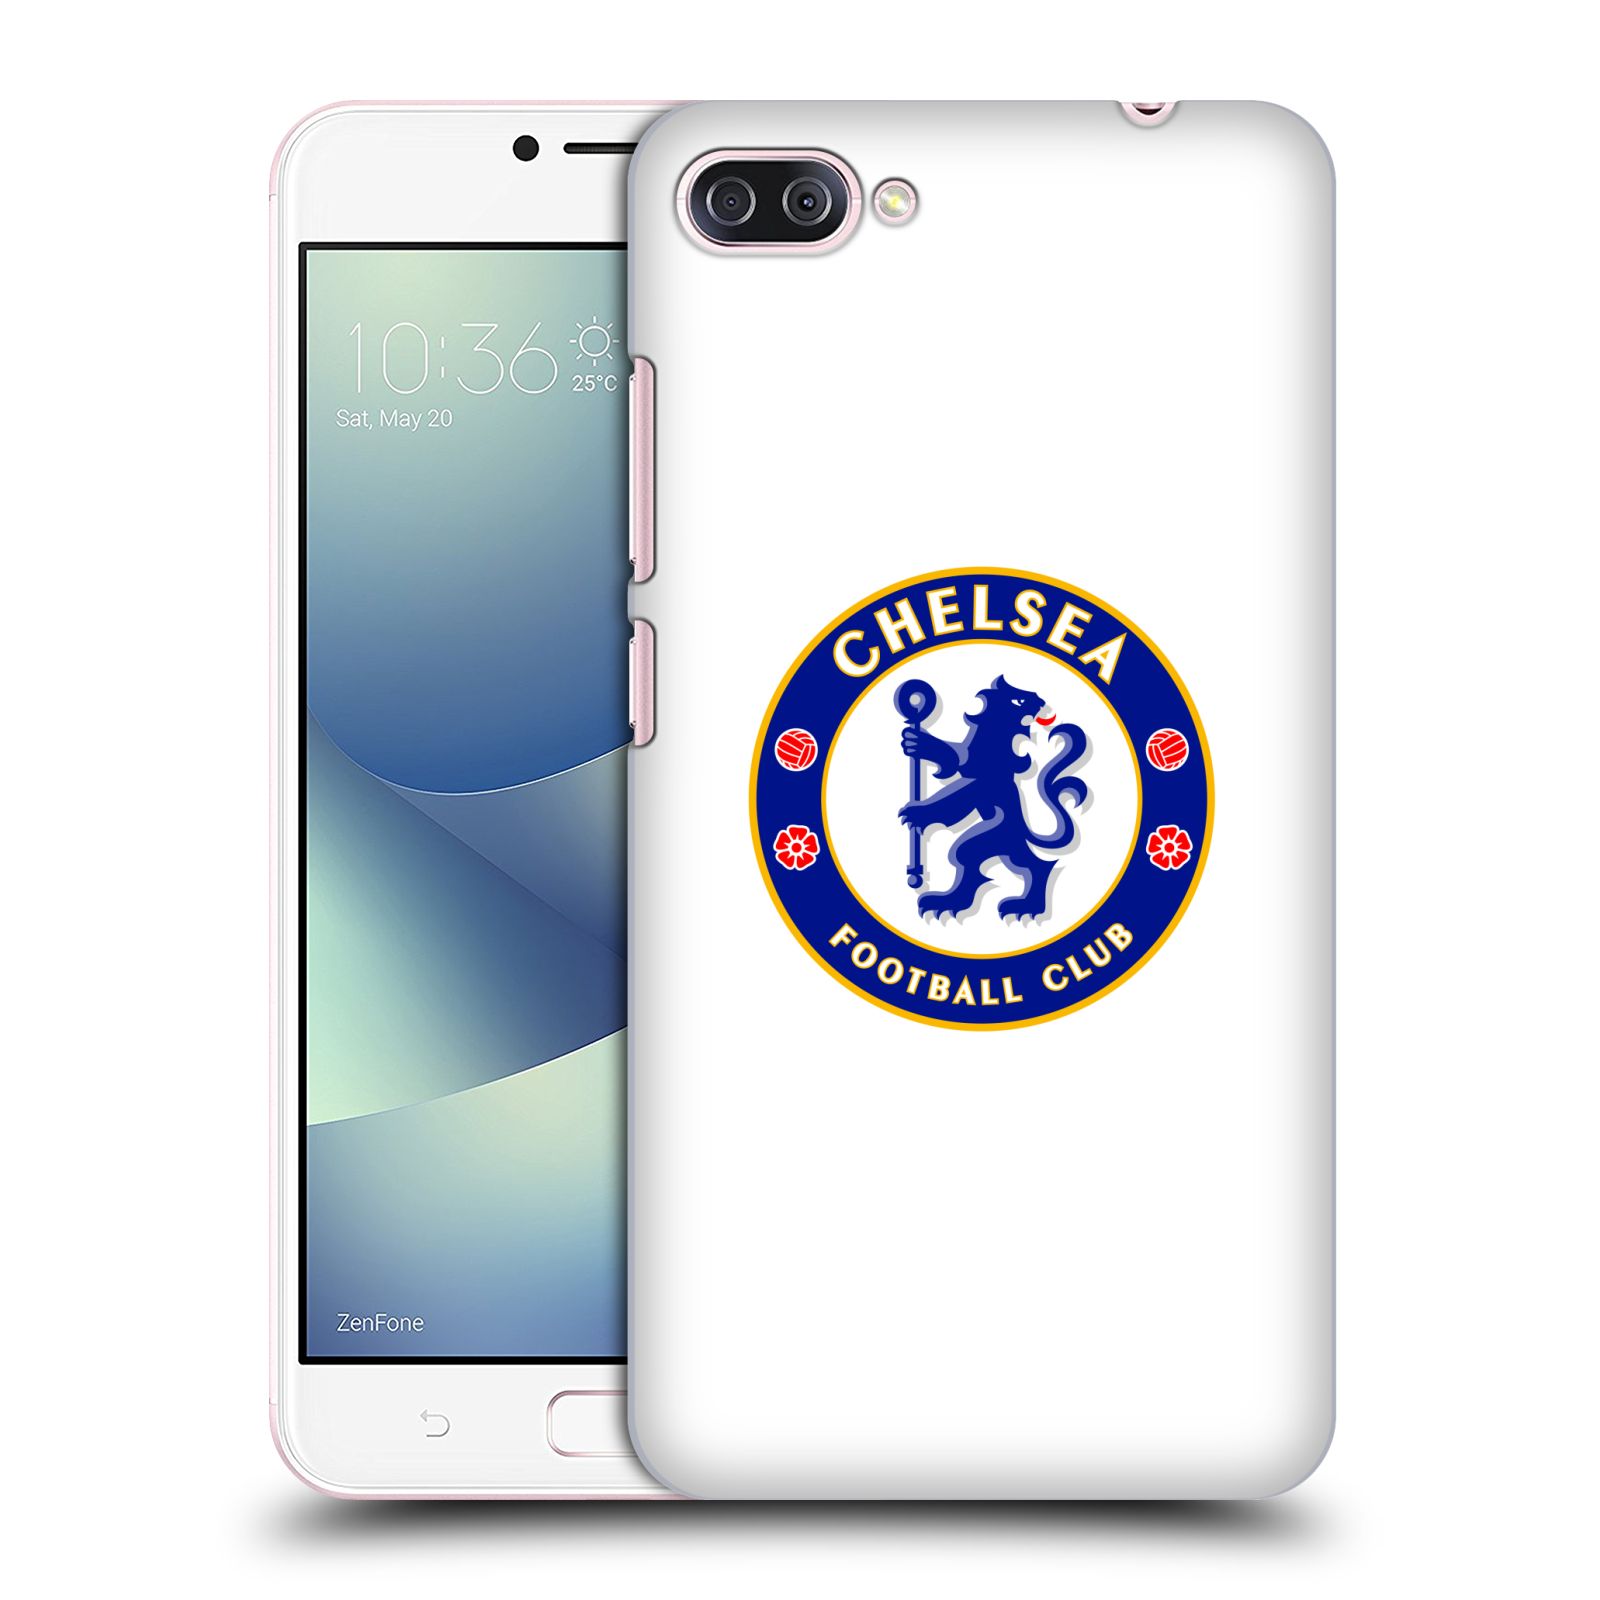 Zadní obal pro mobil Asus Zenfone 4 MAX / 4 MAX PRO (ZC554KL) - HEAD CASE - Fotbalové kluby - Chelsea bílé pozadí